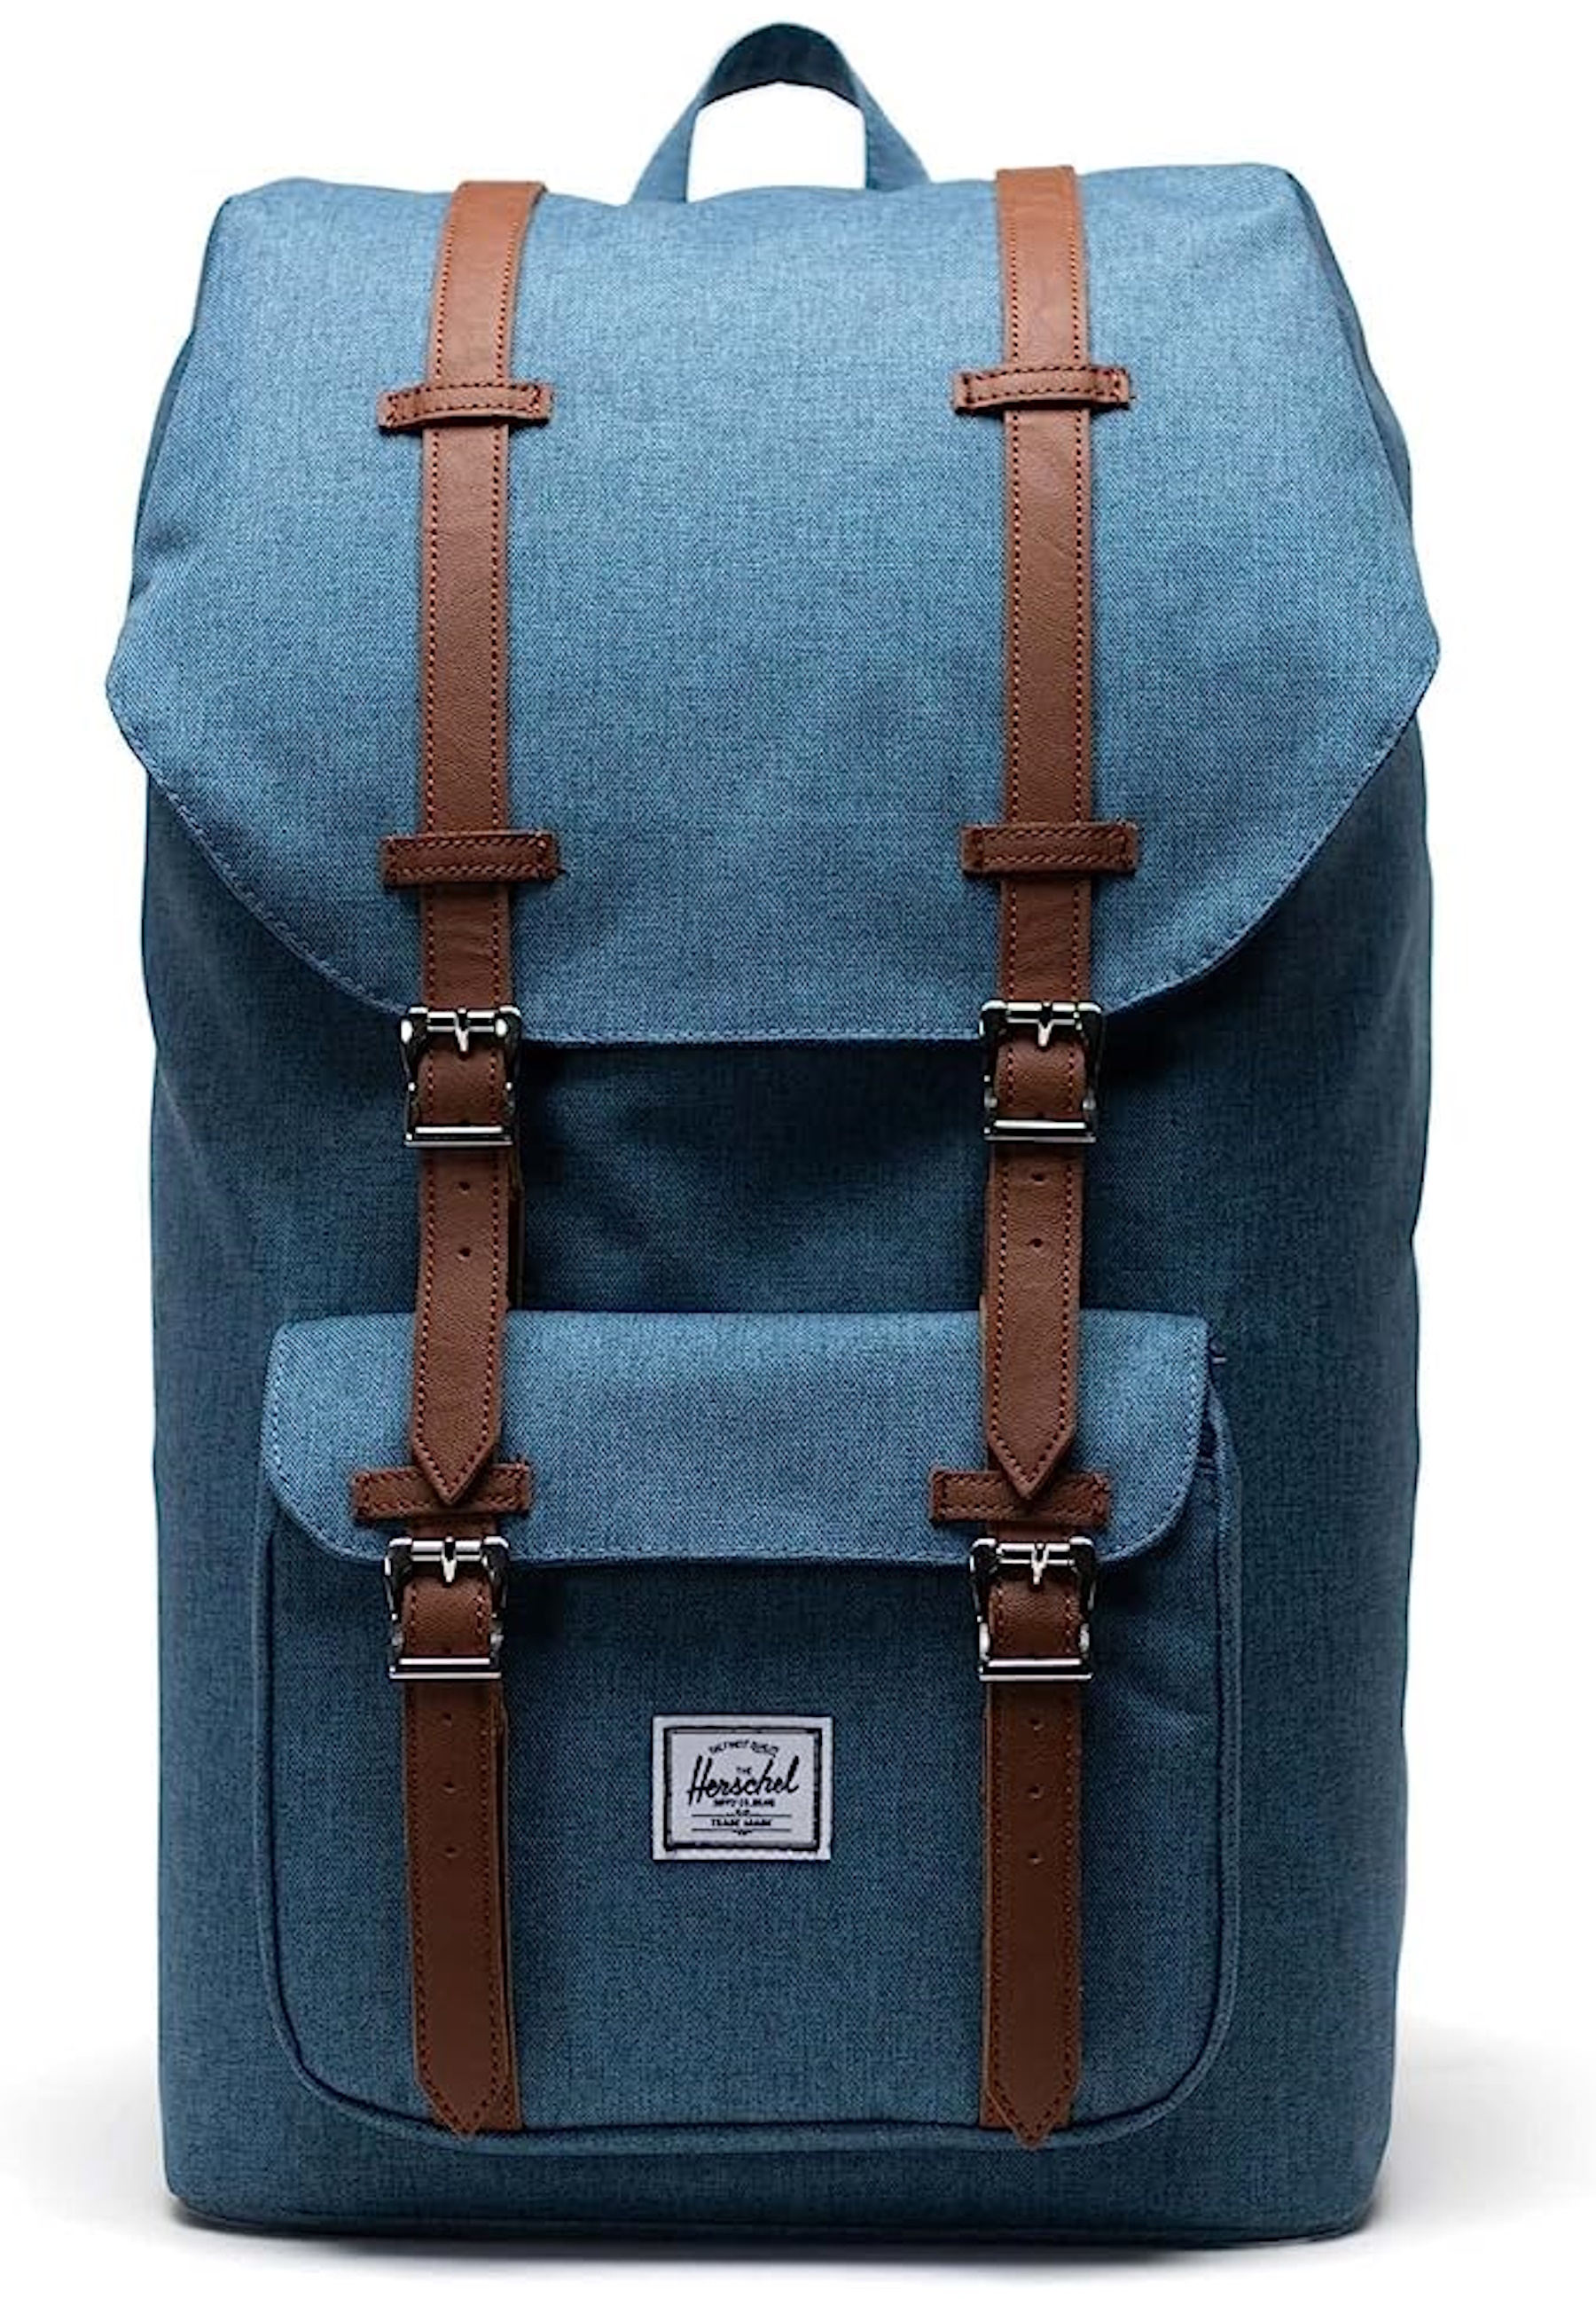 Рюкзак Herschel 'Little America', синий рюкзак little america для планшета 15 единый размер синий